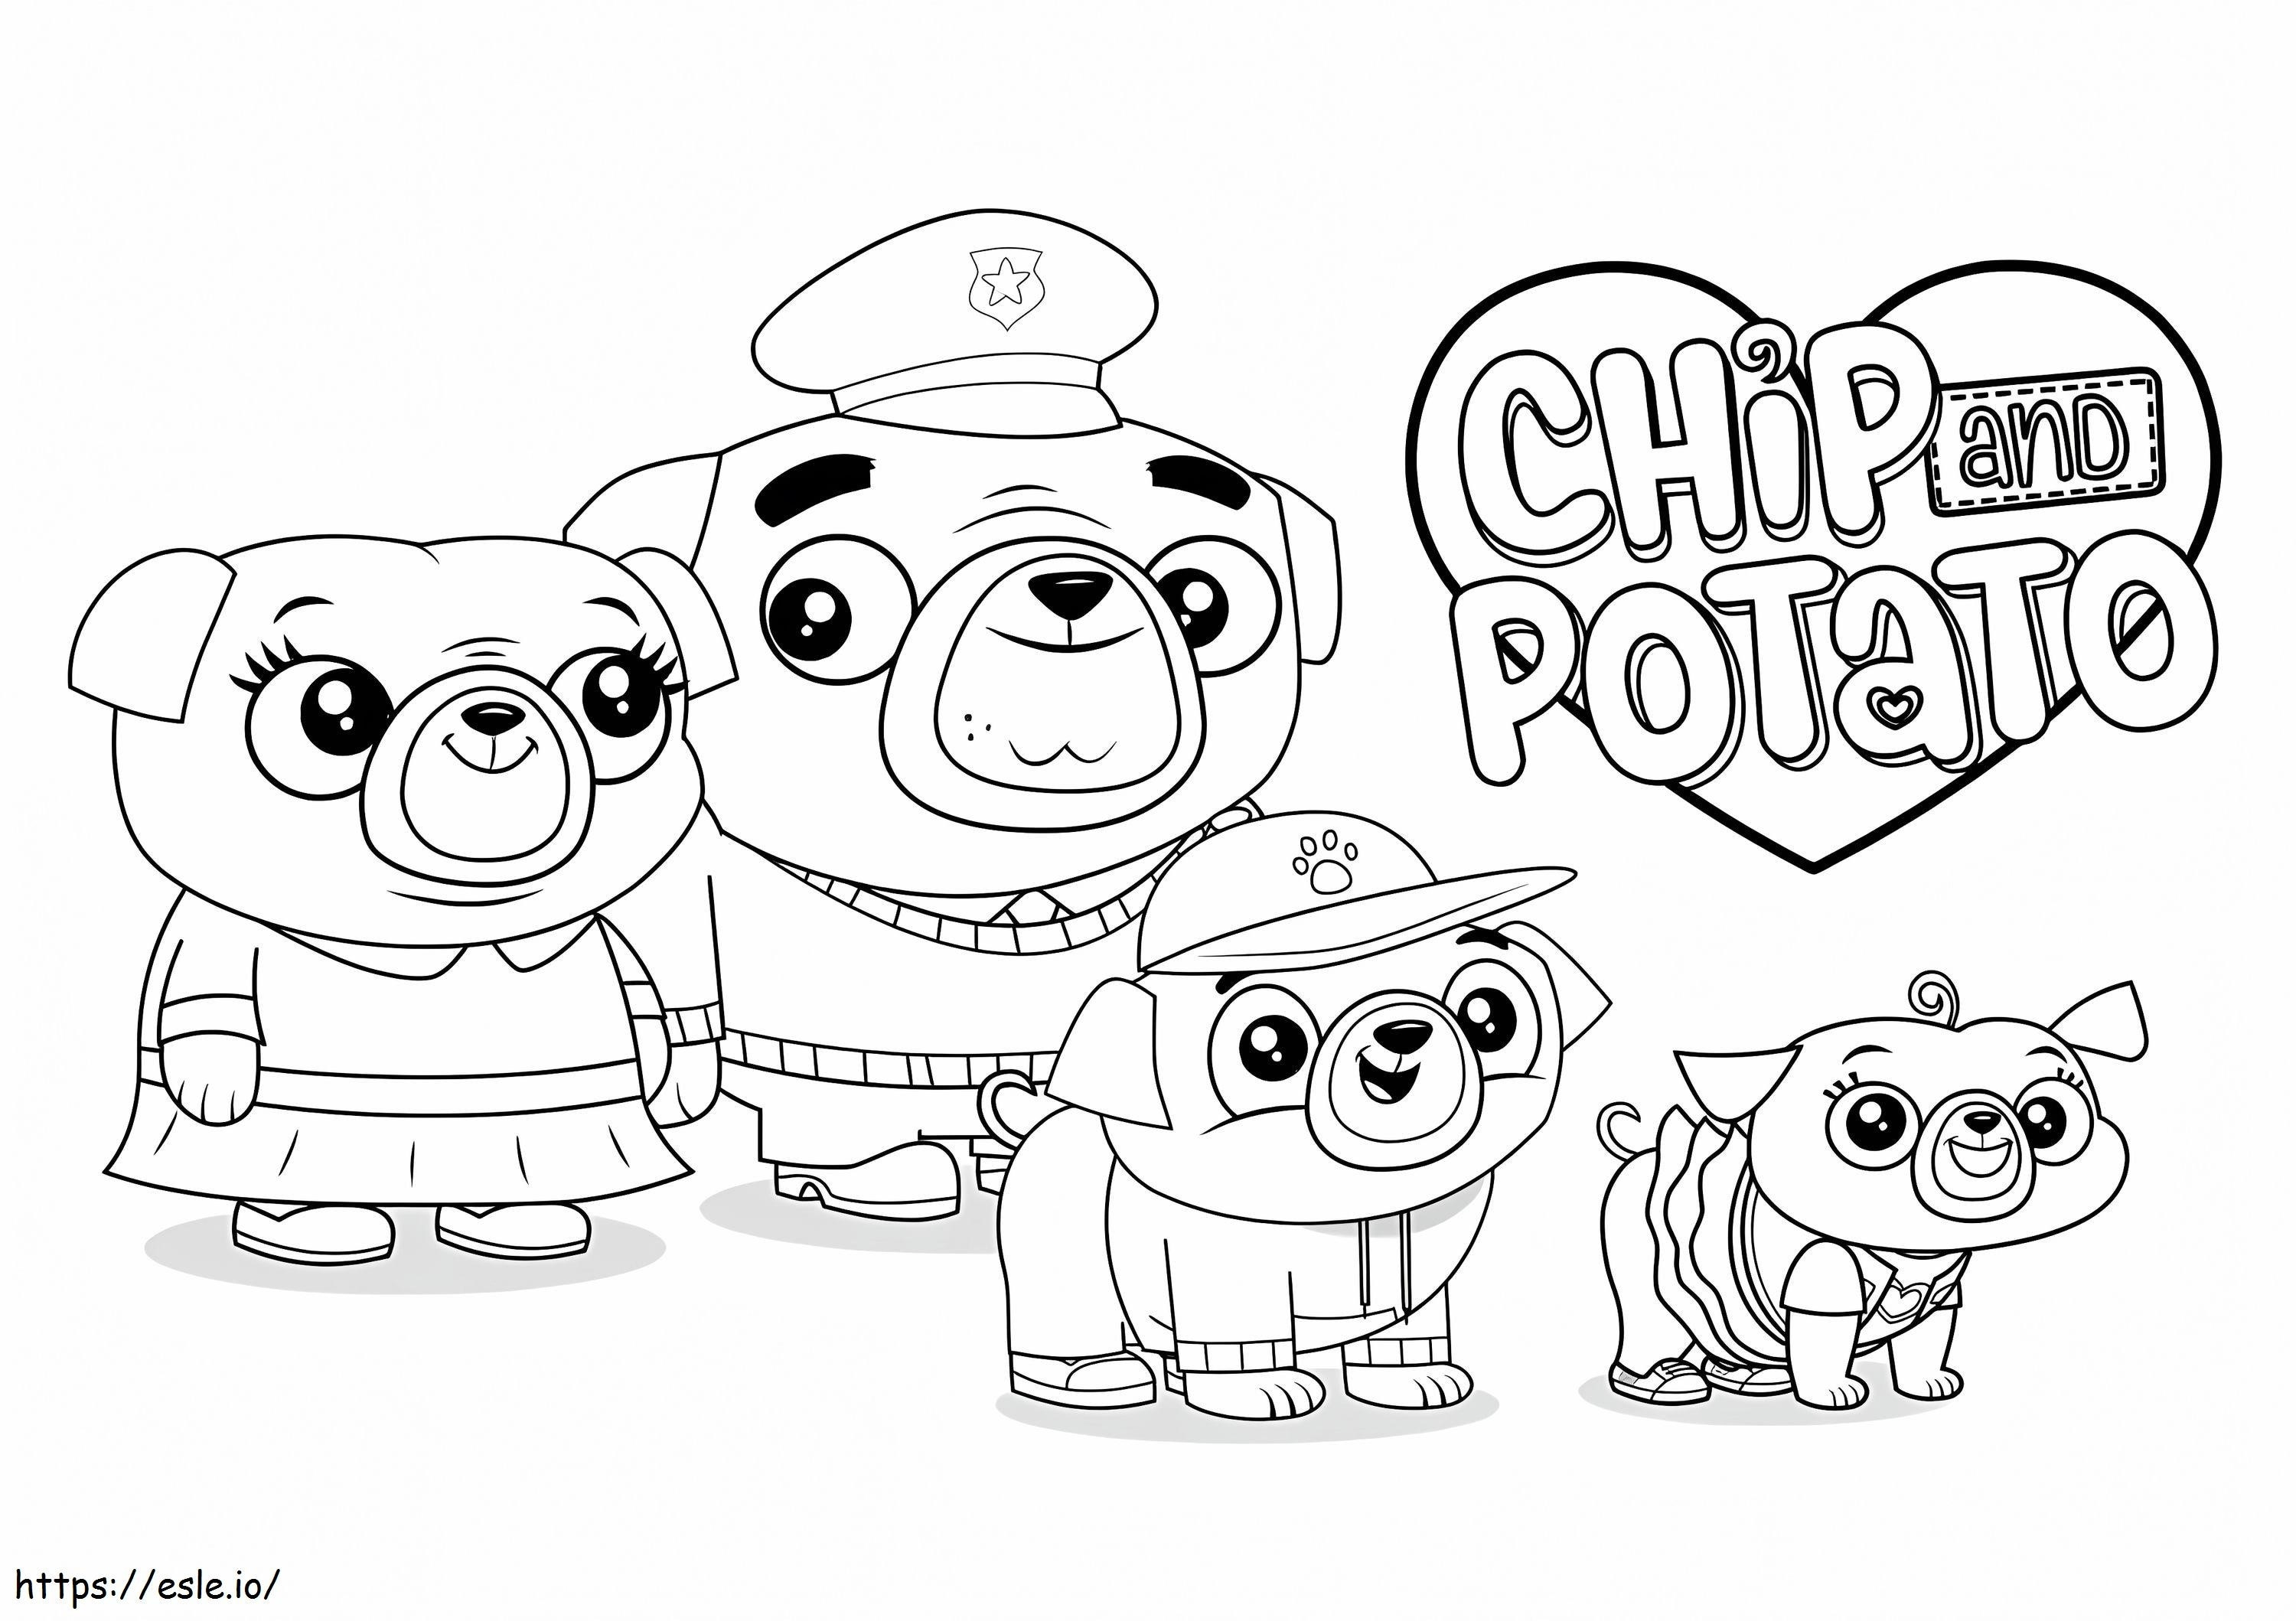 Personajes de patatas fritas y patatas para colorear